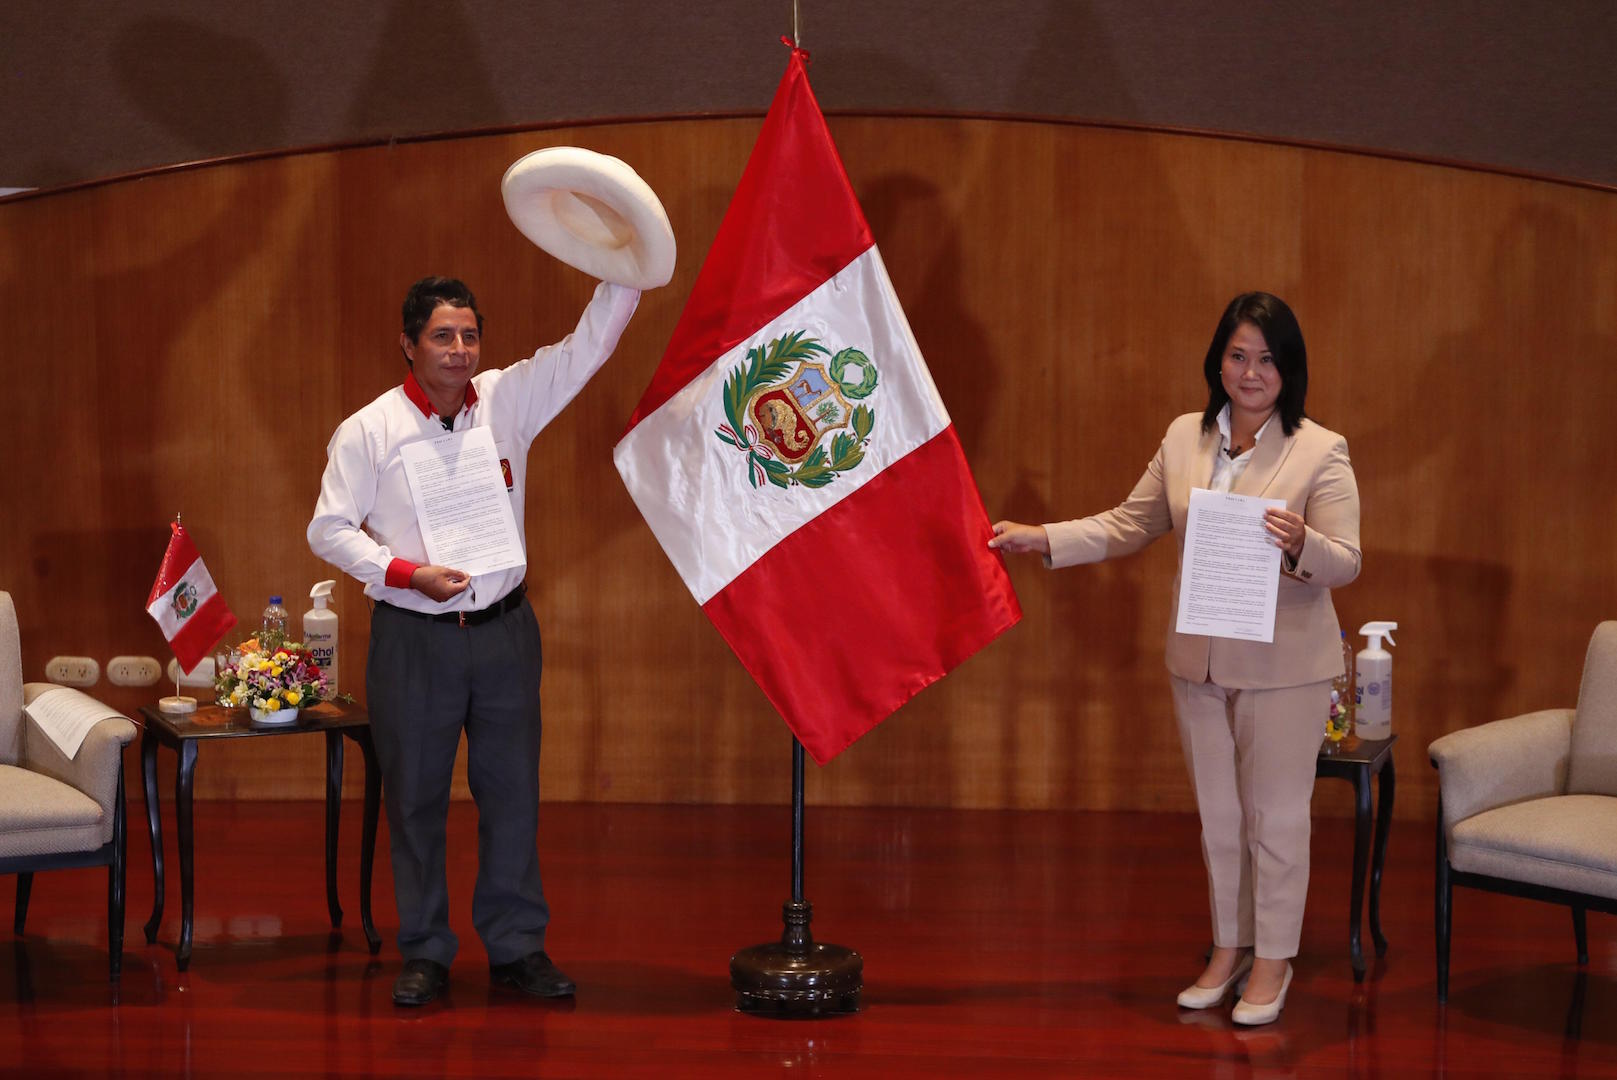 Keiko Fujimori and Pedro Castillo